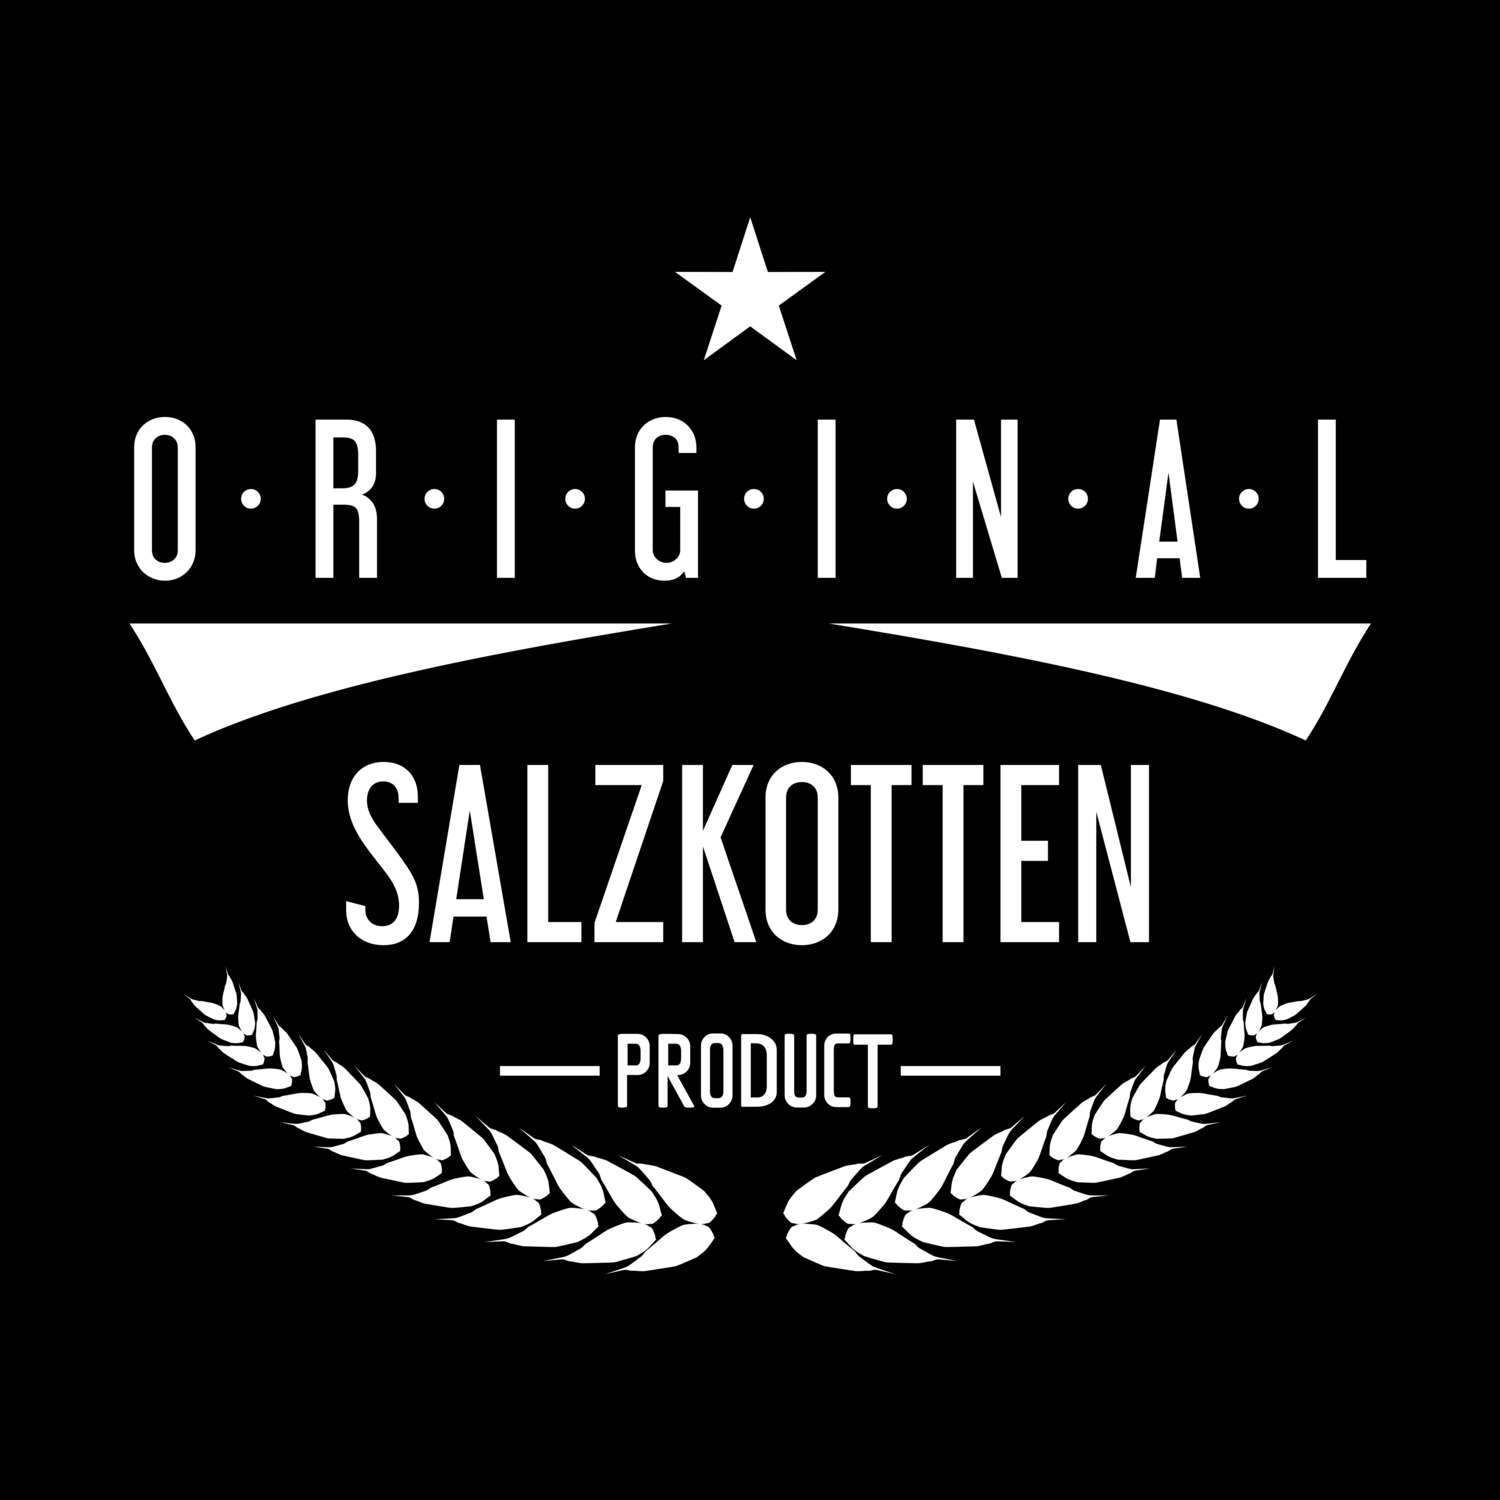 Salzkotten T-Shirt »Original Product«